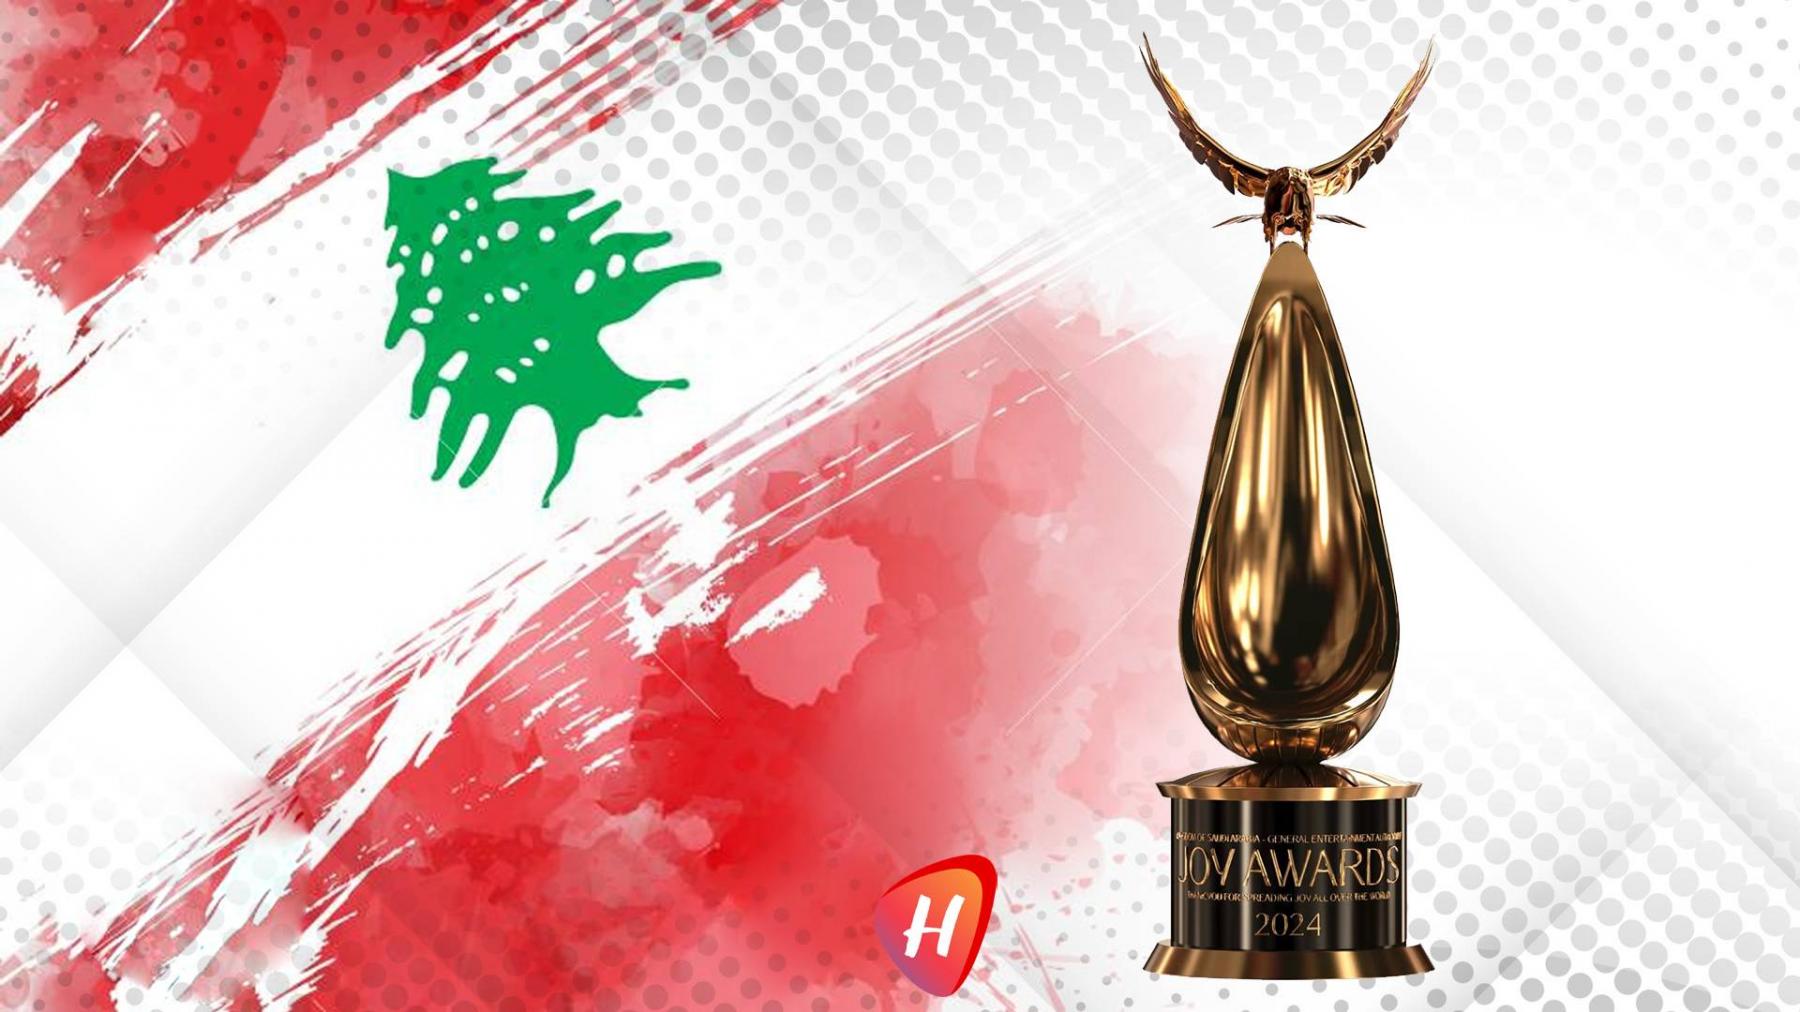 من هم نجوم لبنان المرشحون لجوائز Joy Awards؟